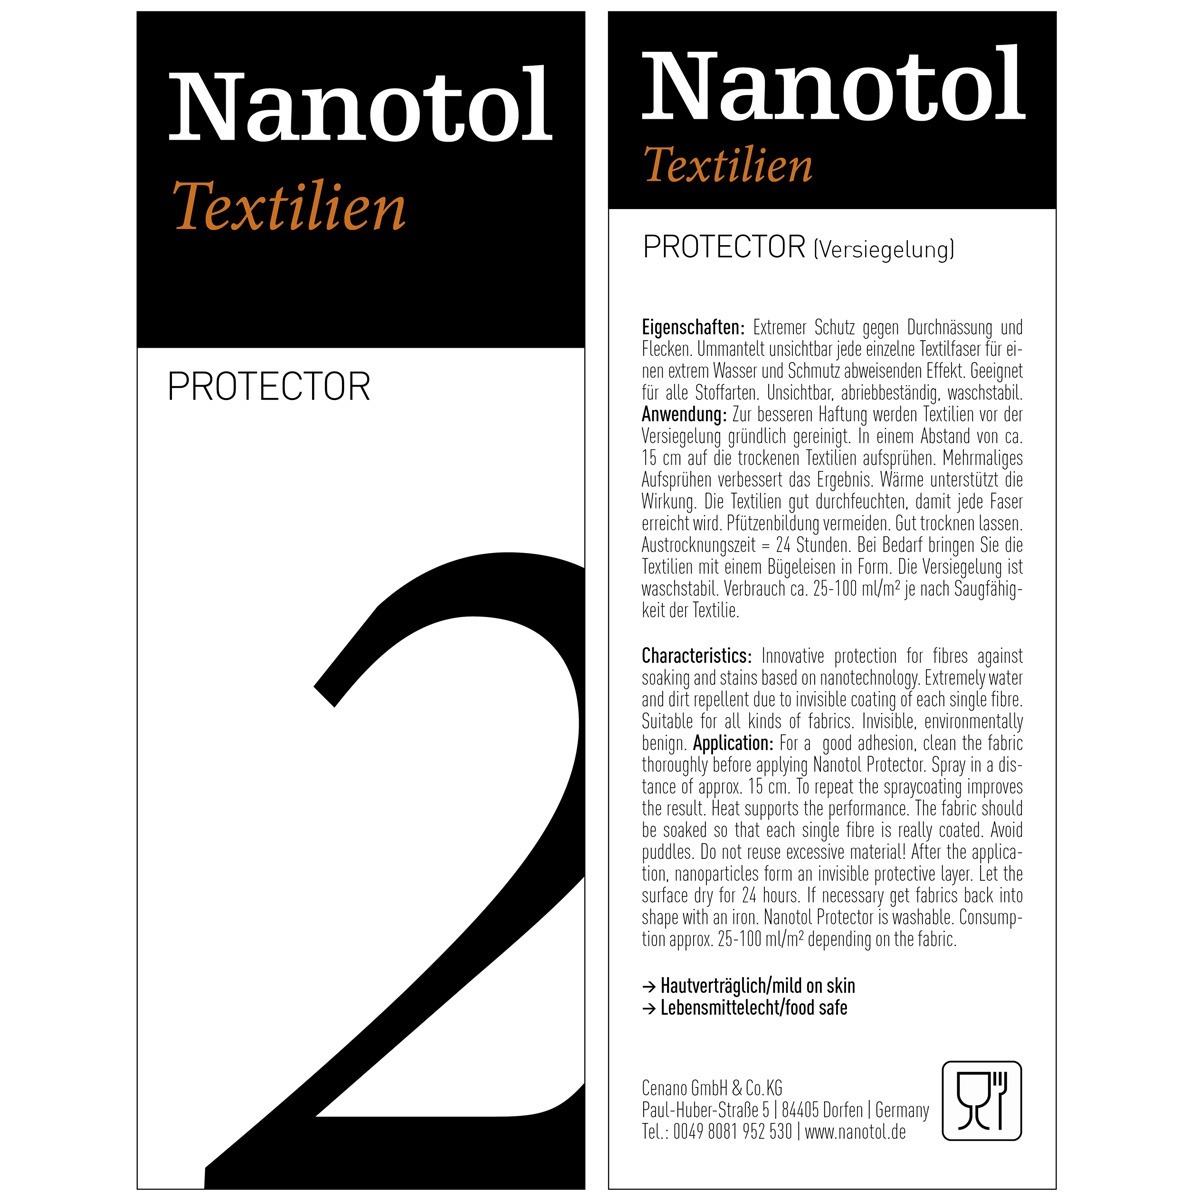 Etikett von Nanotol Textilien Protector